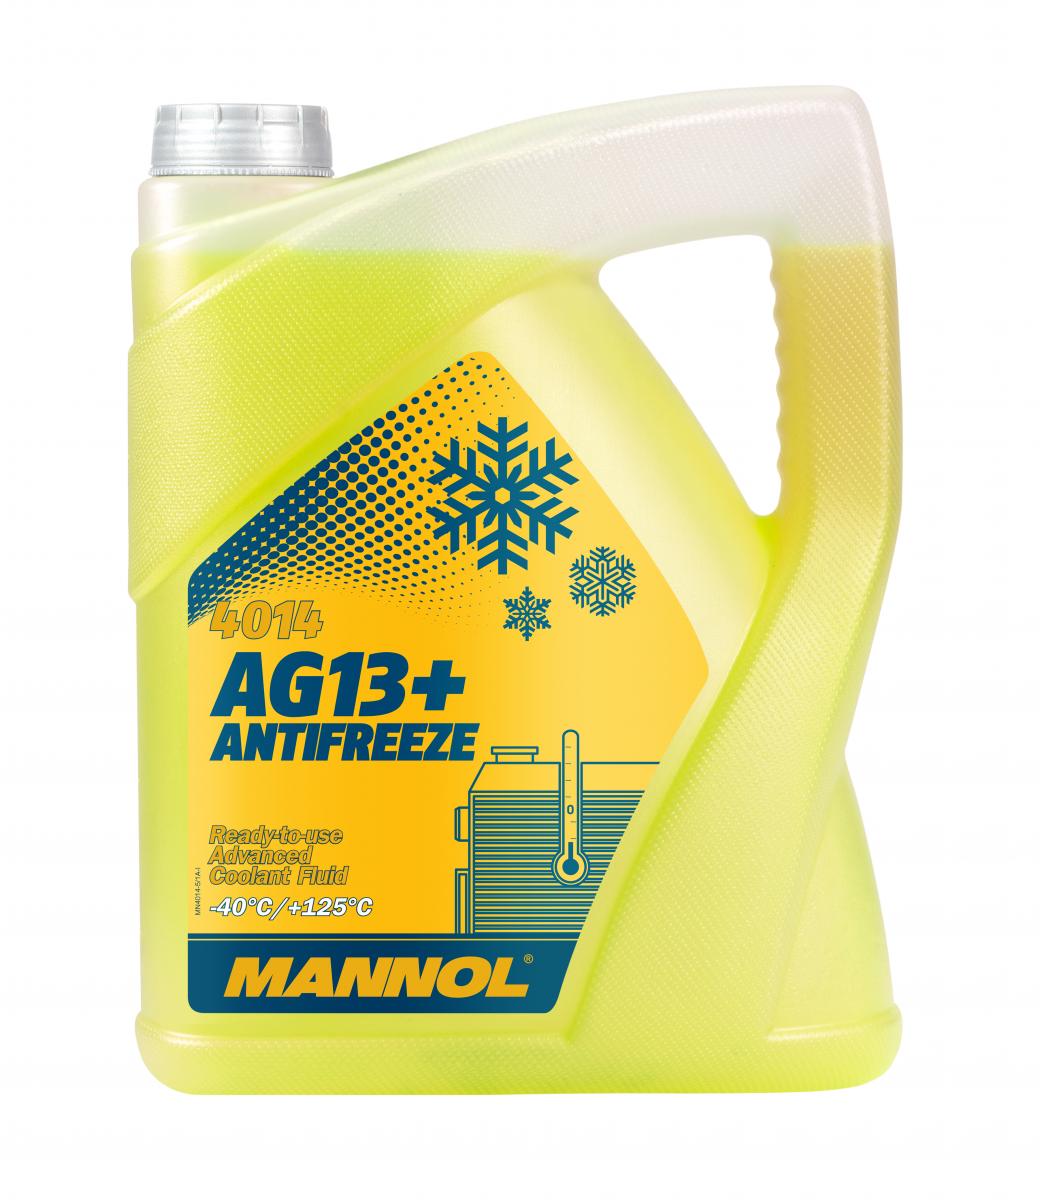 10 Liter (2x5) MANNOL AG13+ Kühlflüssigkeit Antifreeze Fertiggemisch -40°C gelb G13+